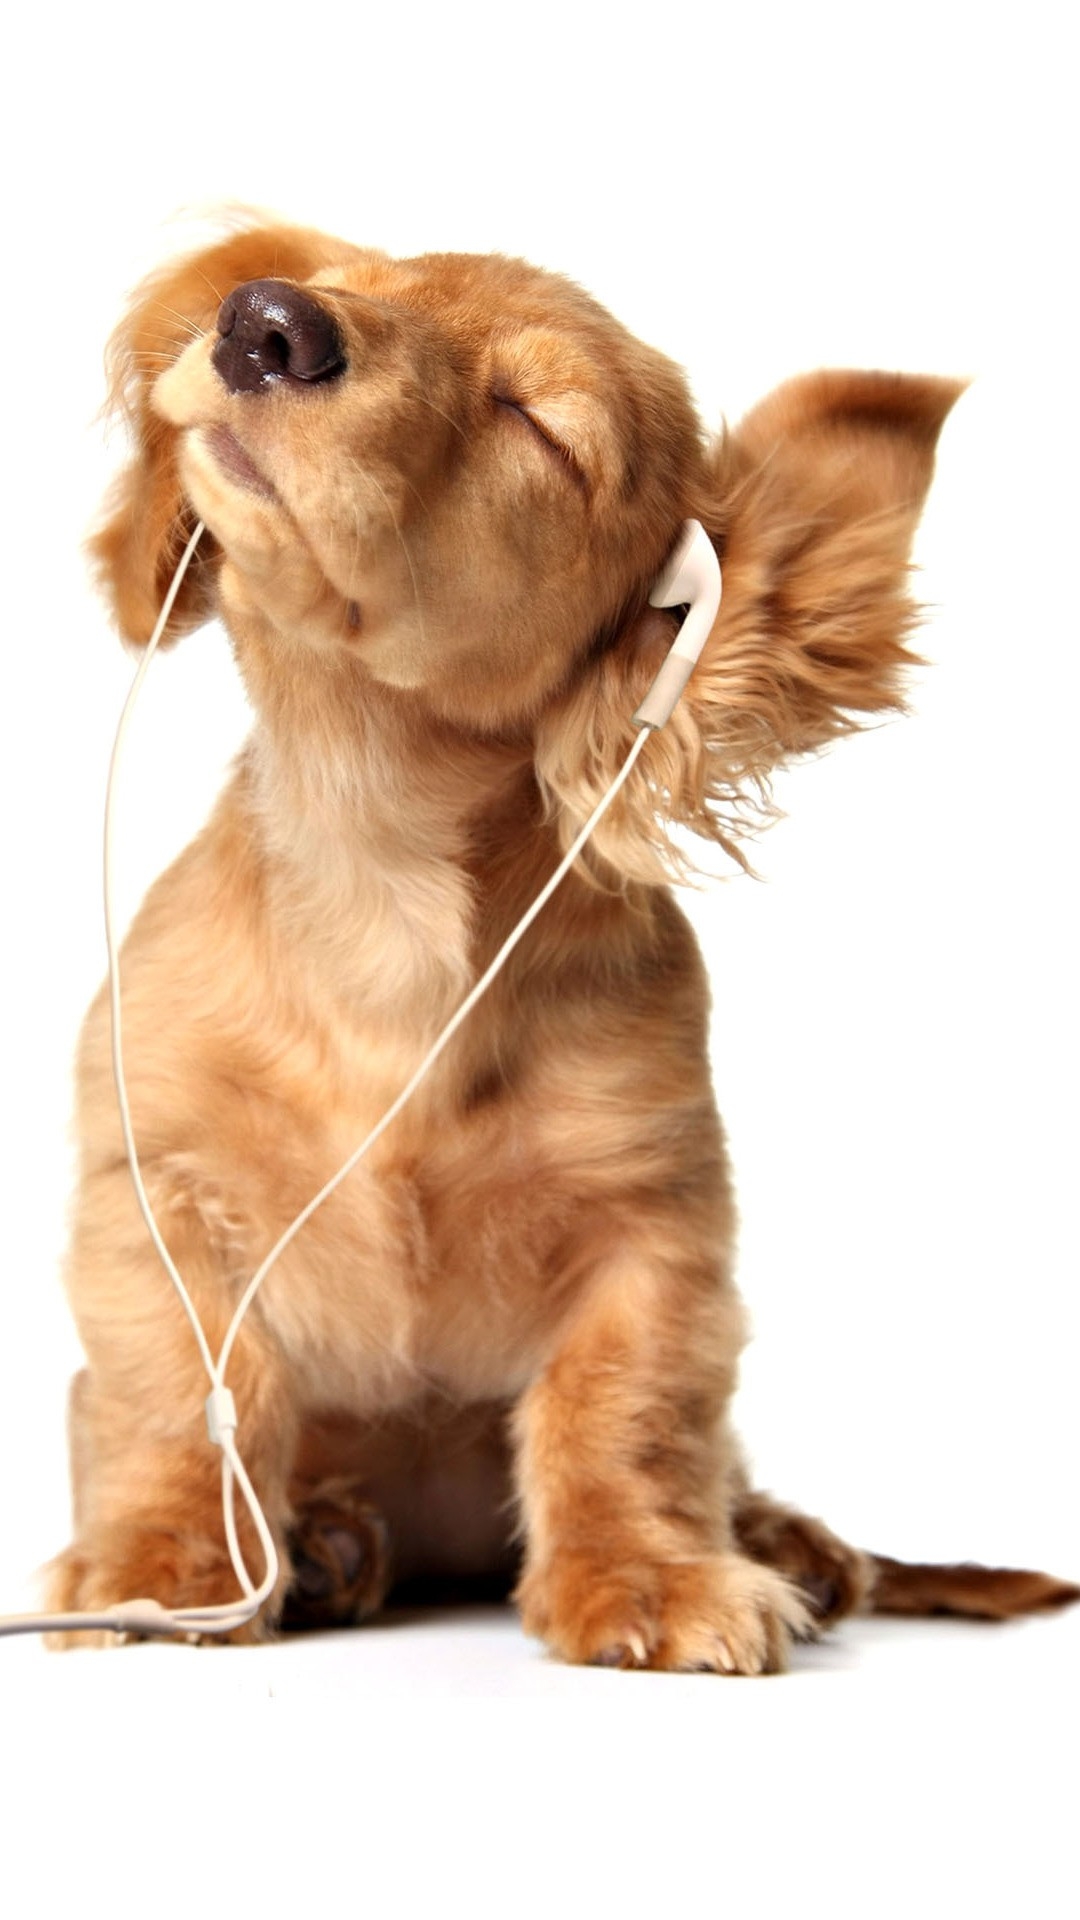 音楽を聞く犬 Iphone11 スマホ壁紙 待受画像ギャラリー